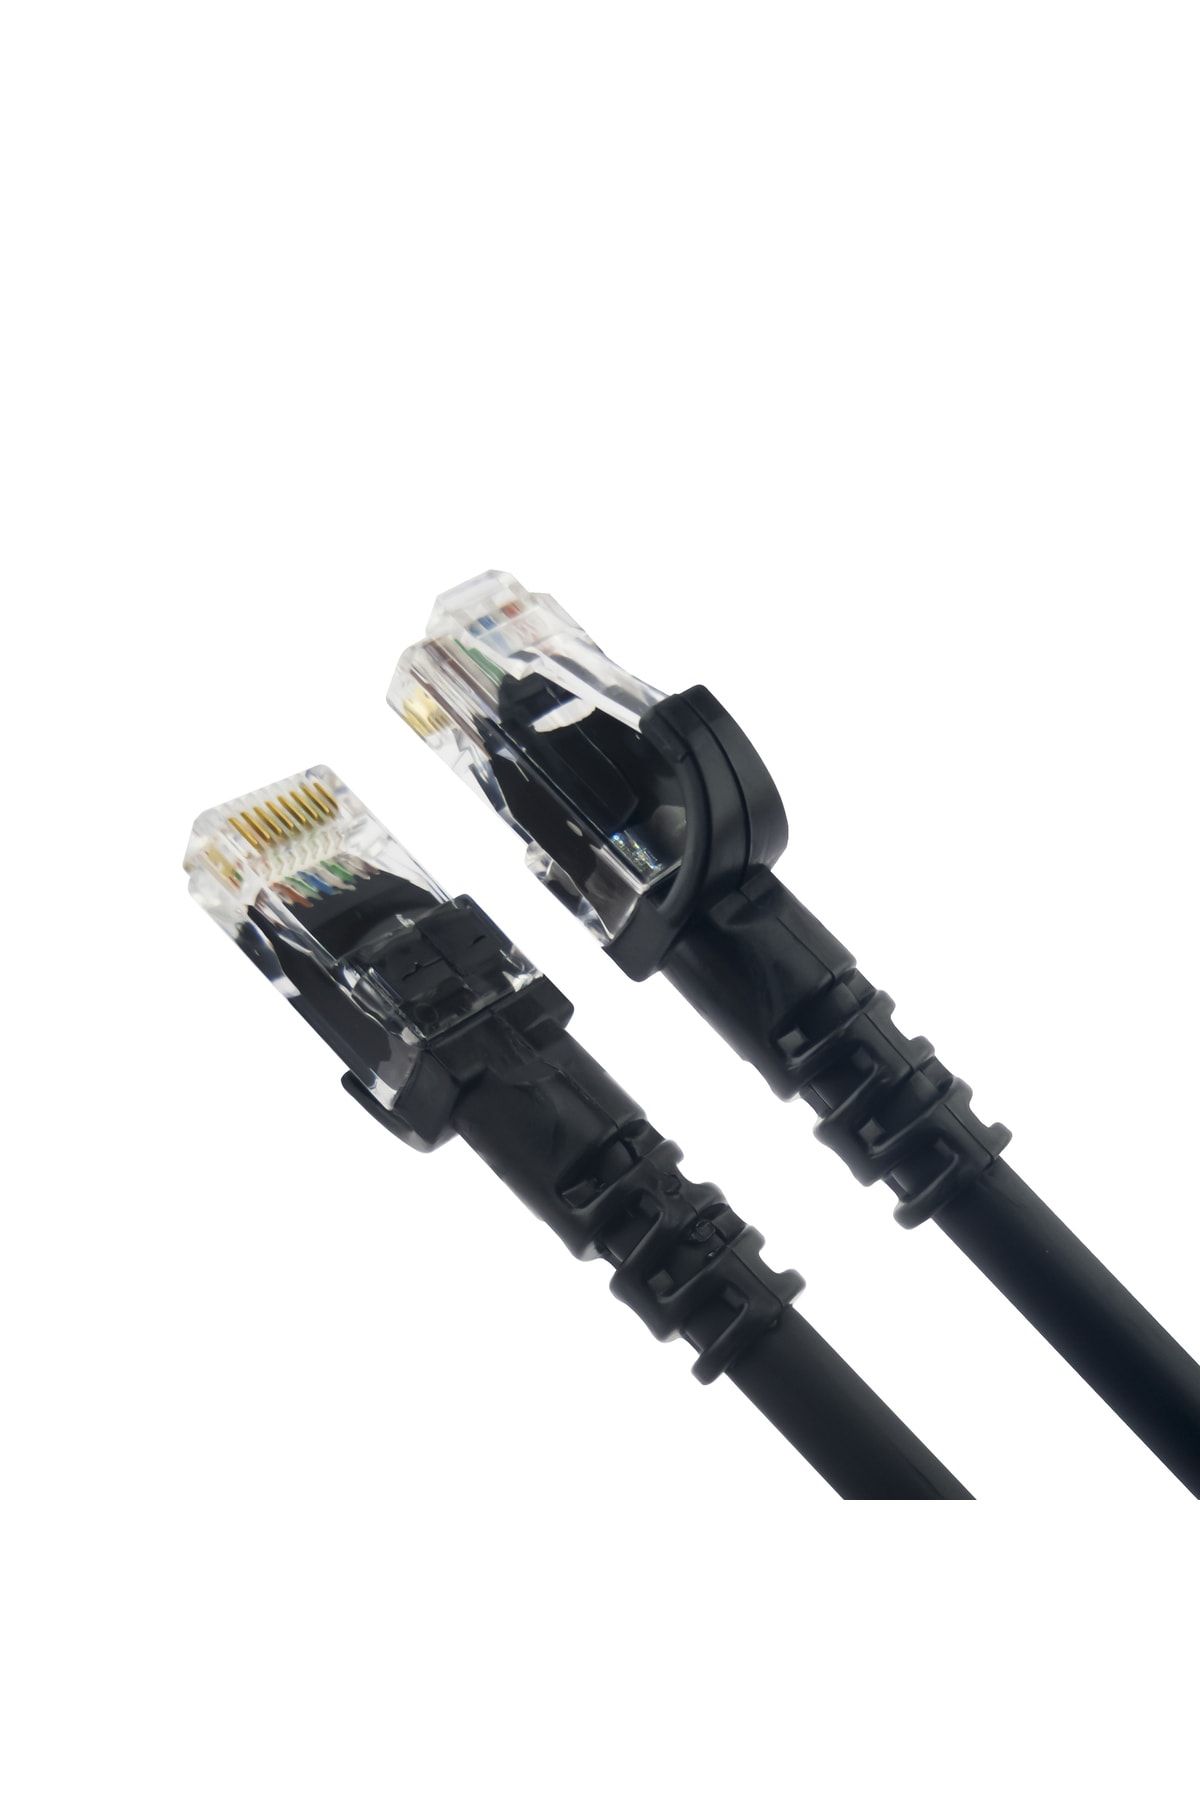 DERKAB 30 Metre Cat6 Network-Ağ-Ethernet Kablosu Siyah